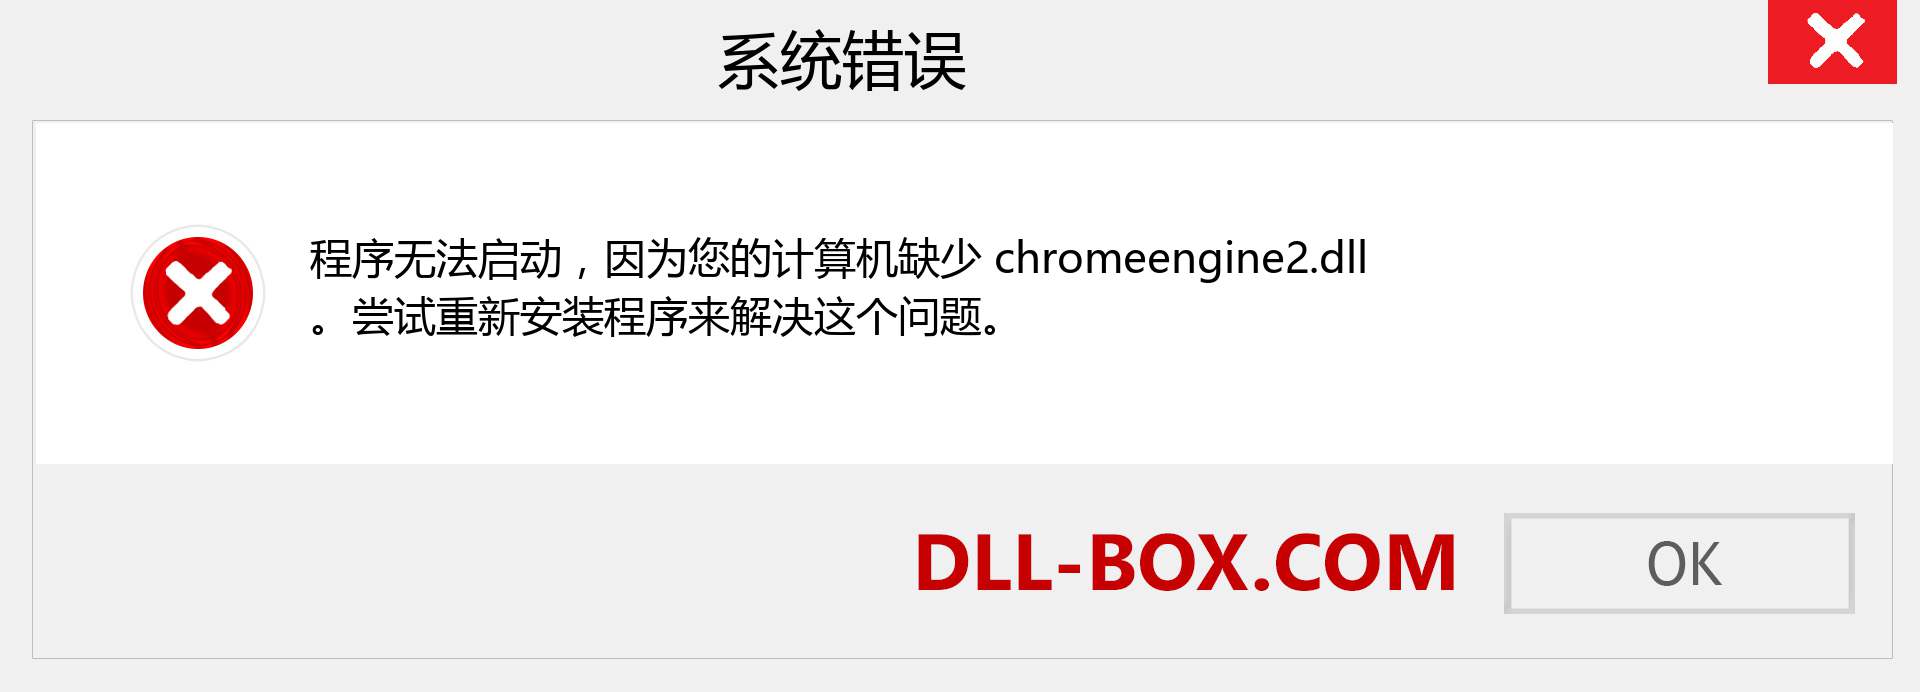 chromeengine2.dll 文件丢失？。 适用于 Windows 7、8、10 的下载 - 修复 Windows、照片、图像上的 chromeengine2 dll 丢失错误